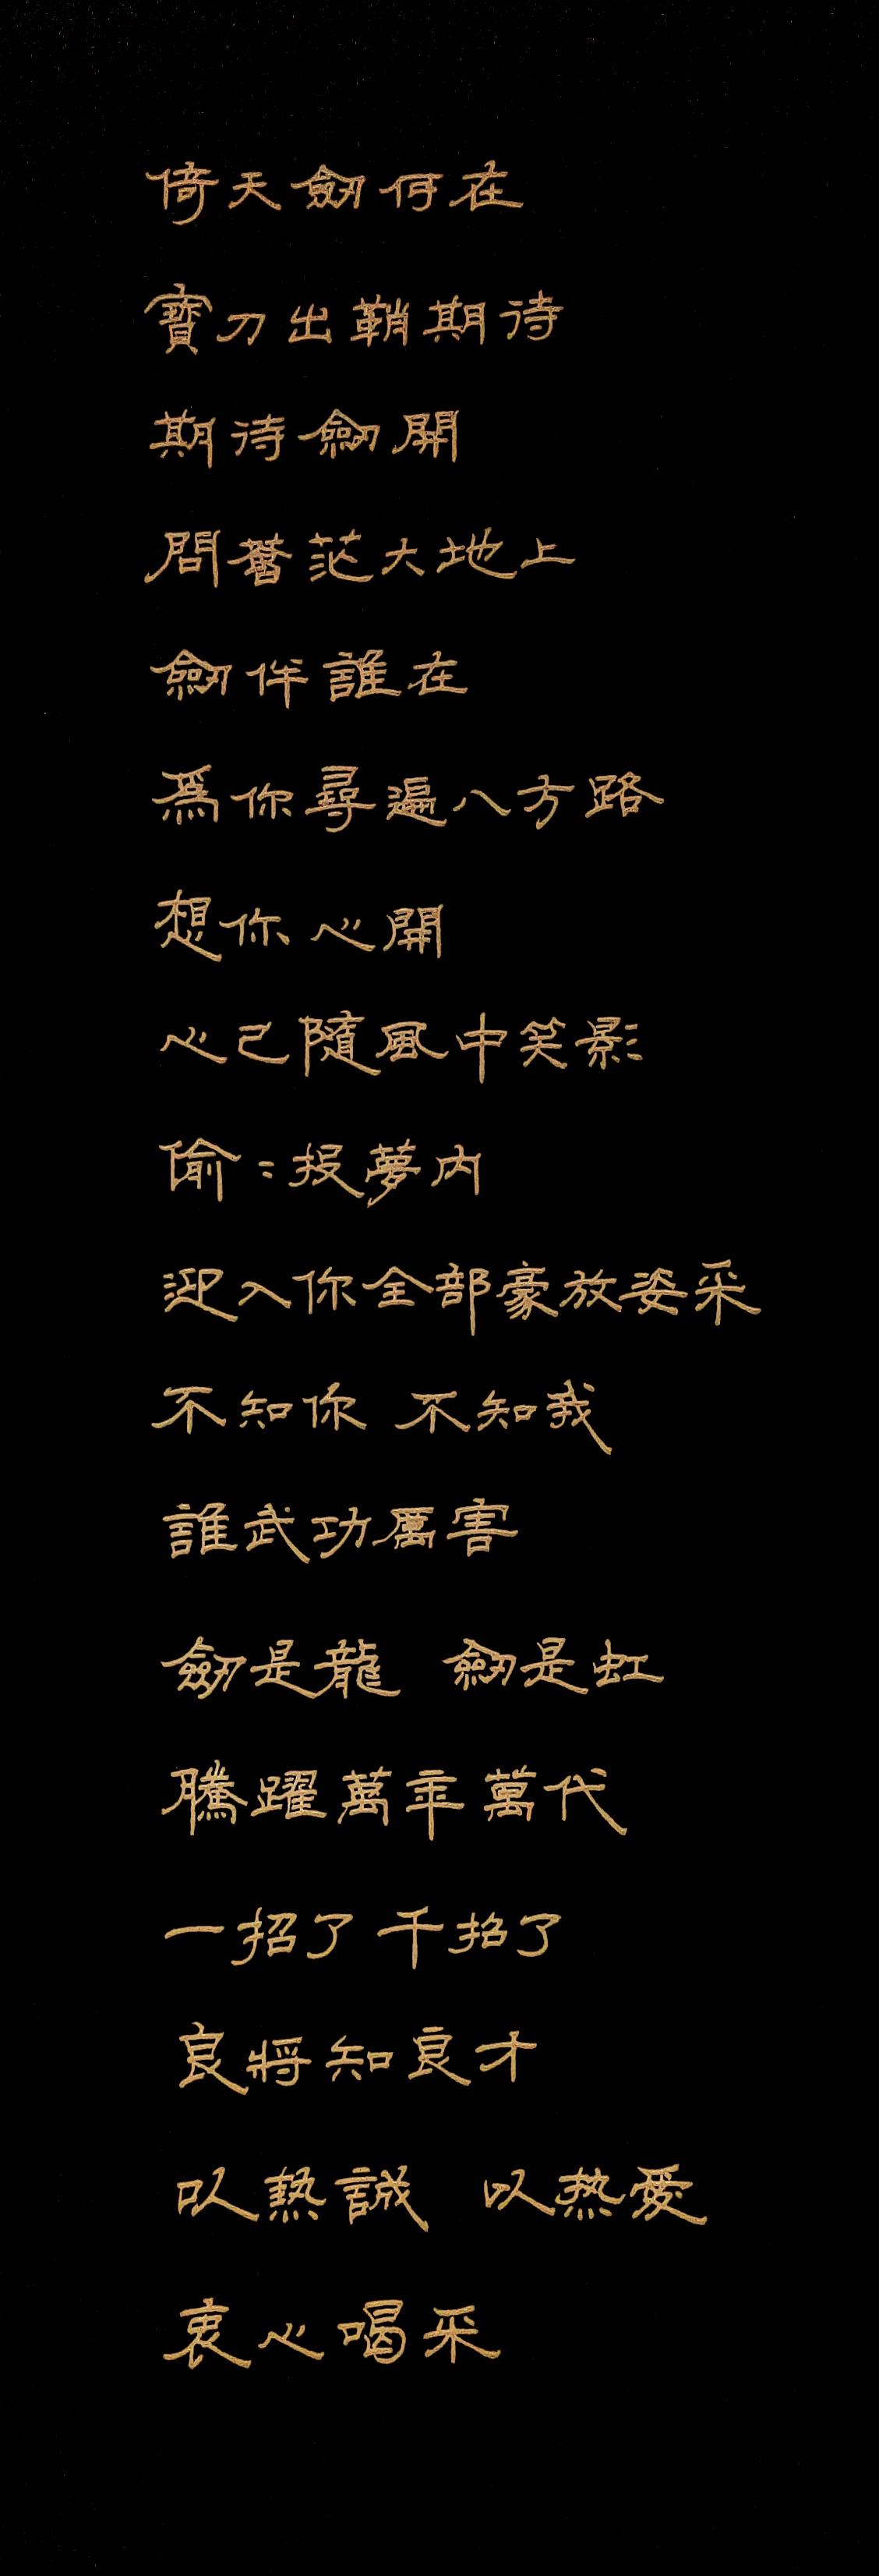 《倚天屠龙记》的新中文标题：绝世神功锐气排山河（倚天屠龙记之九阳神功）